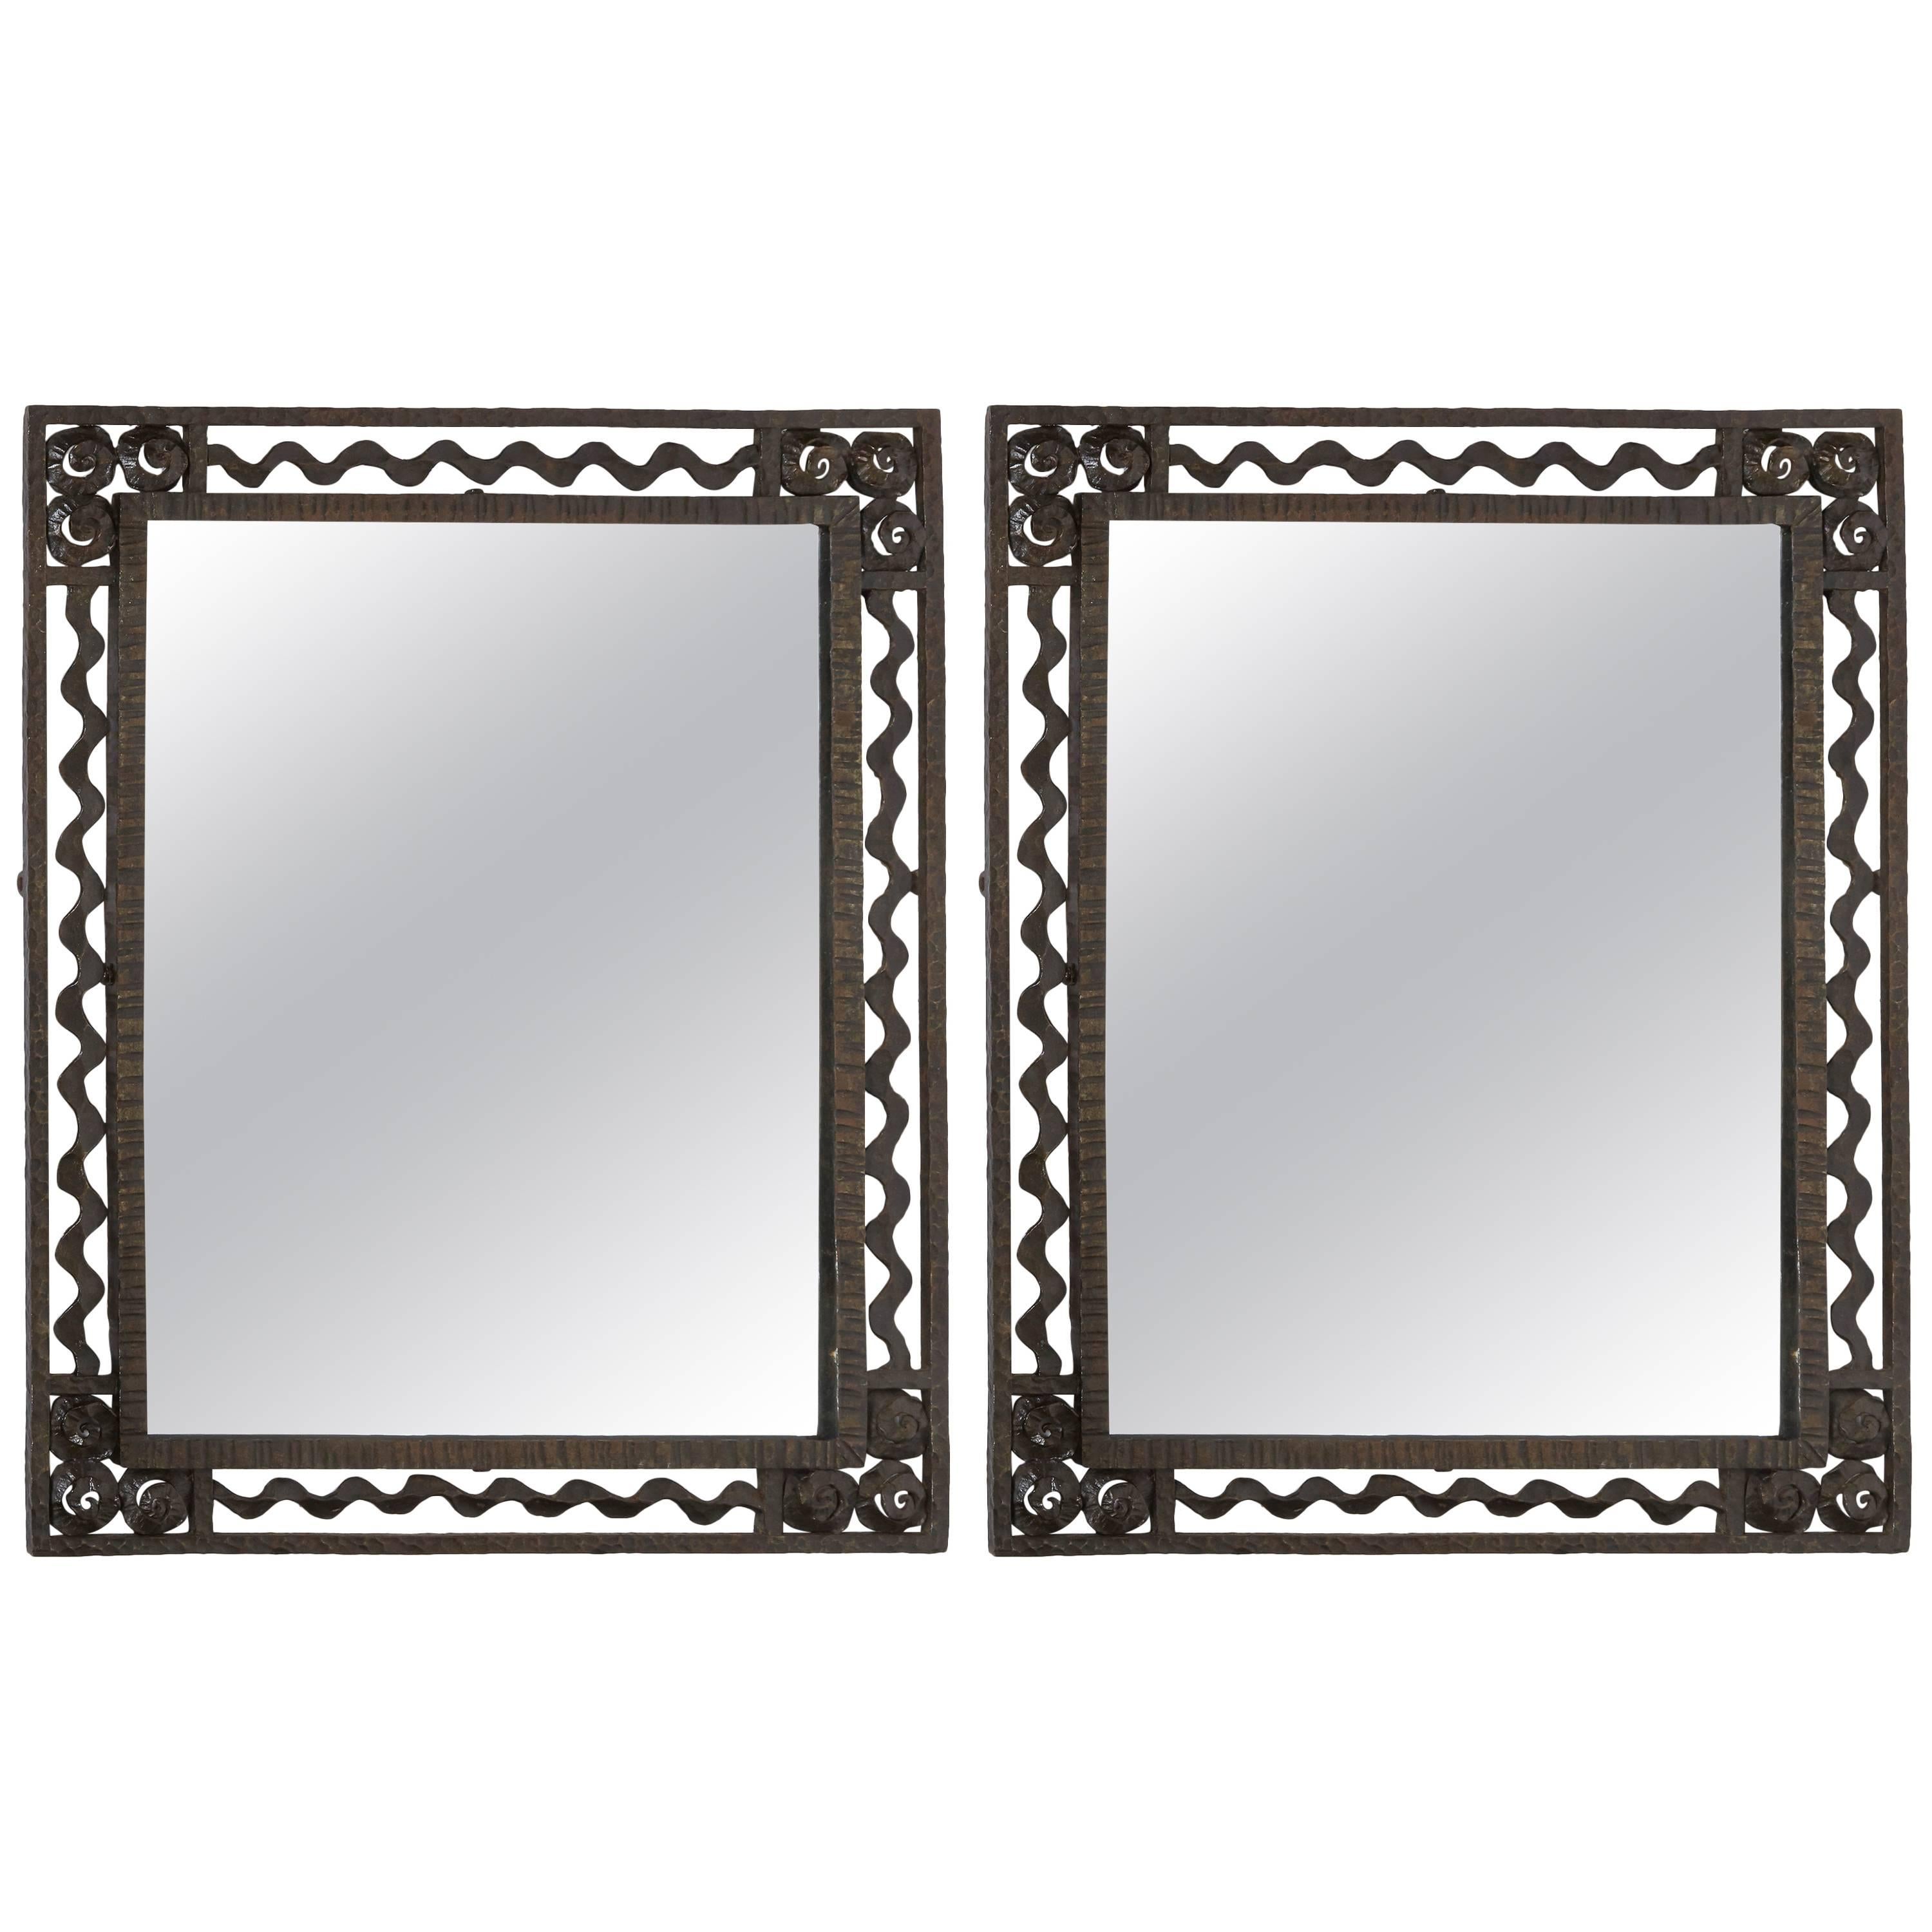 Wrought Iron Mirrors